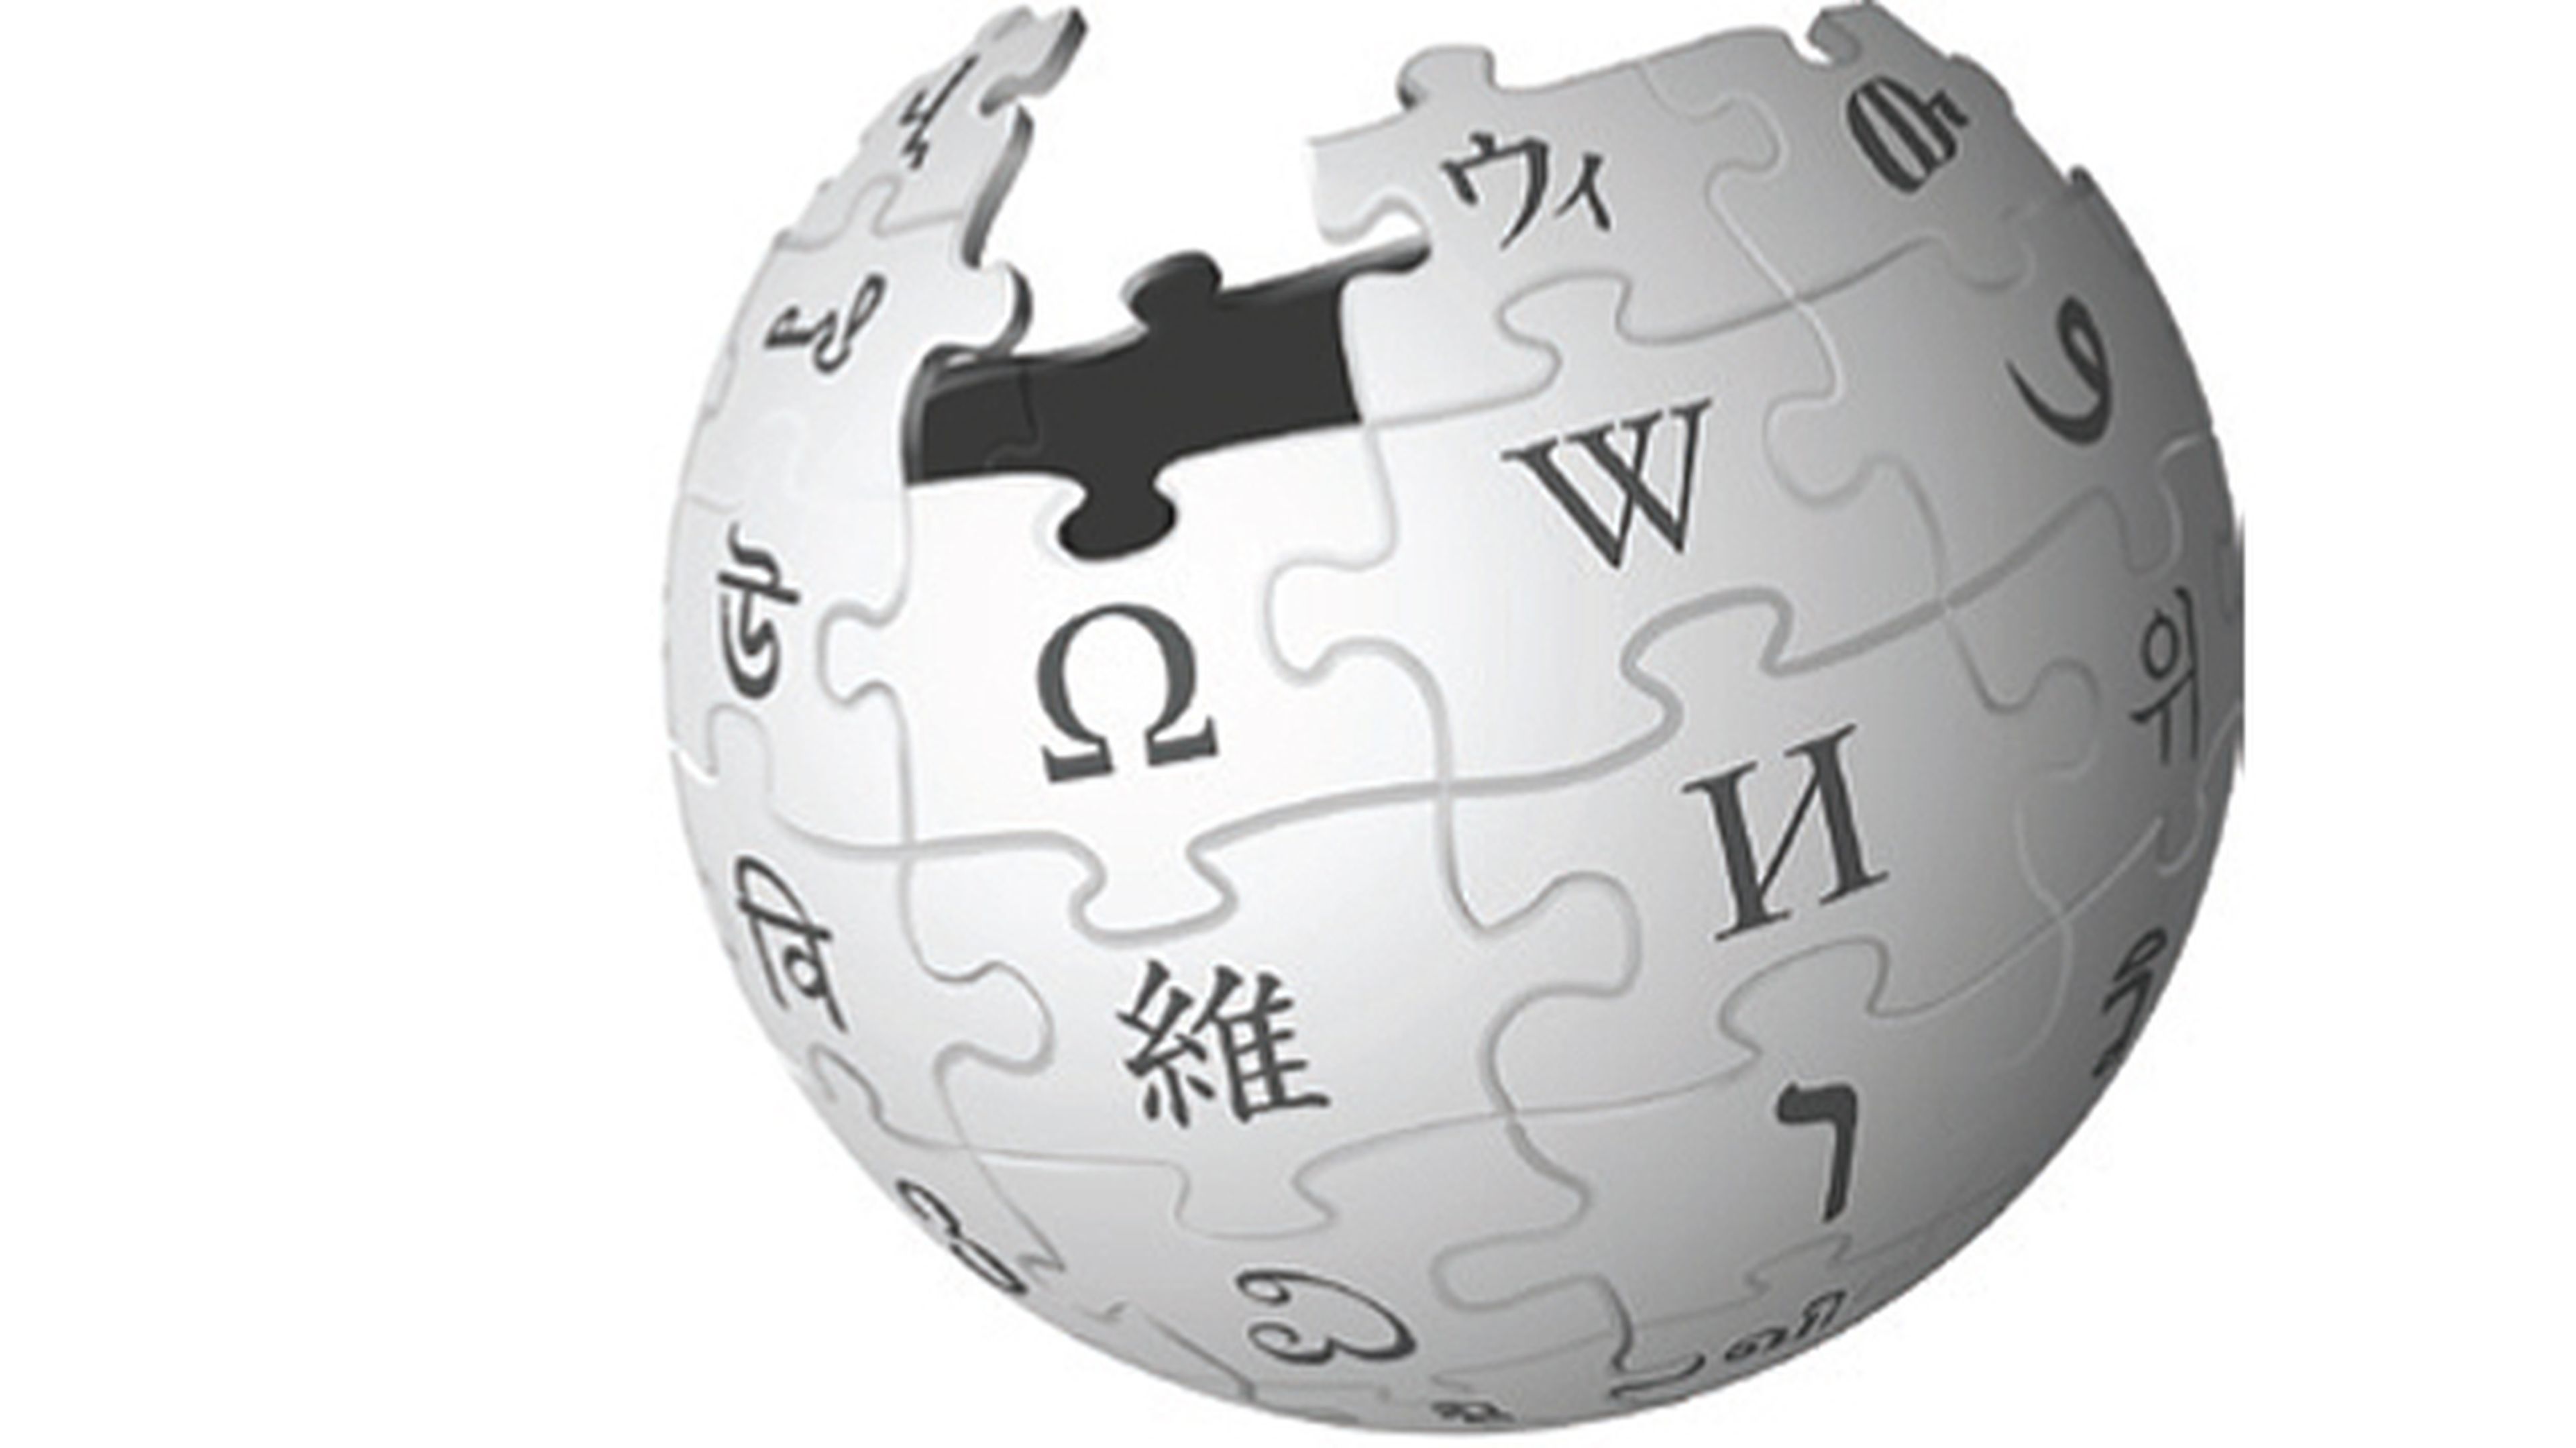 Wikipedia cambia sus condiciones para contribuir